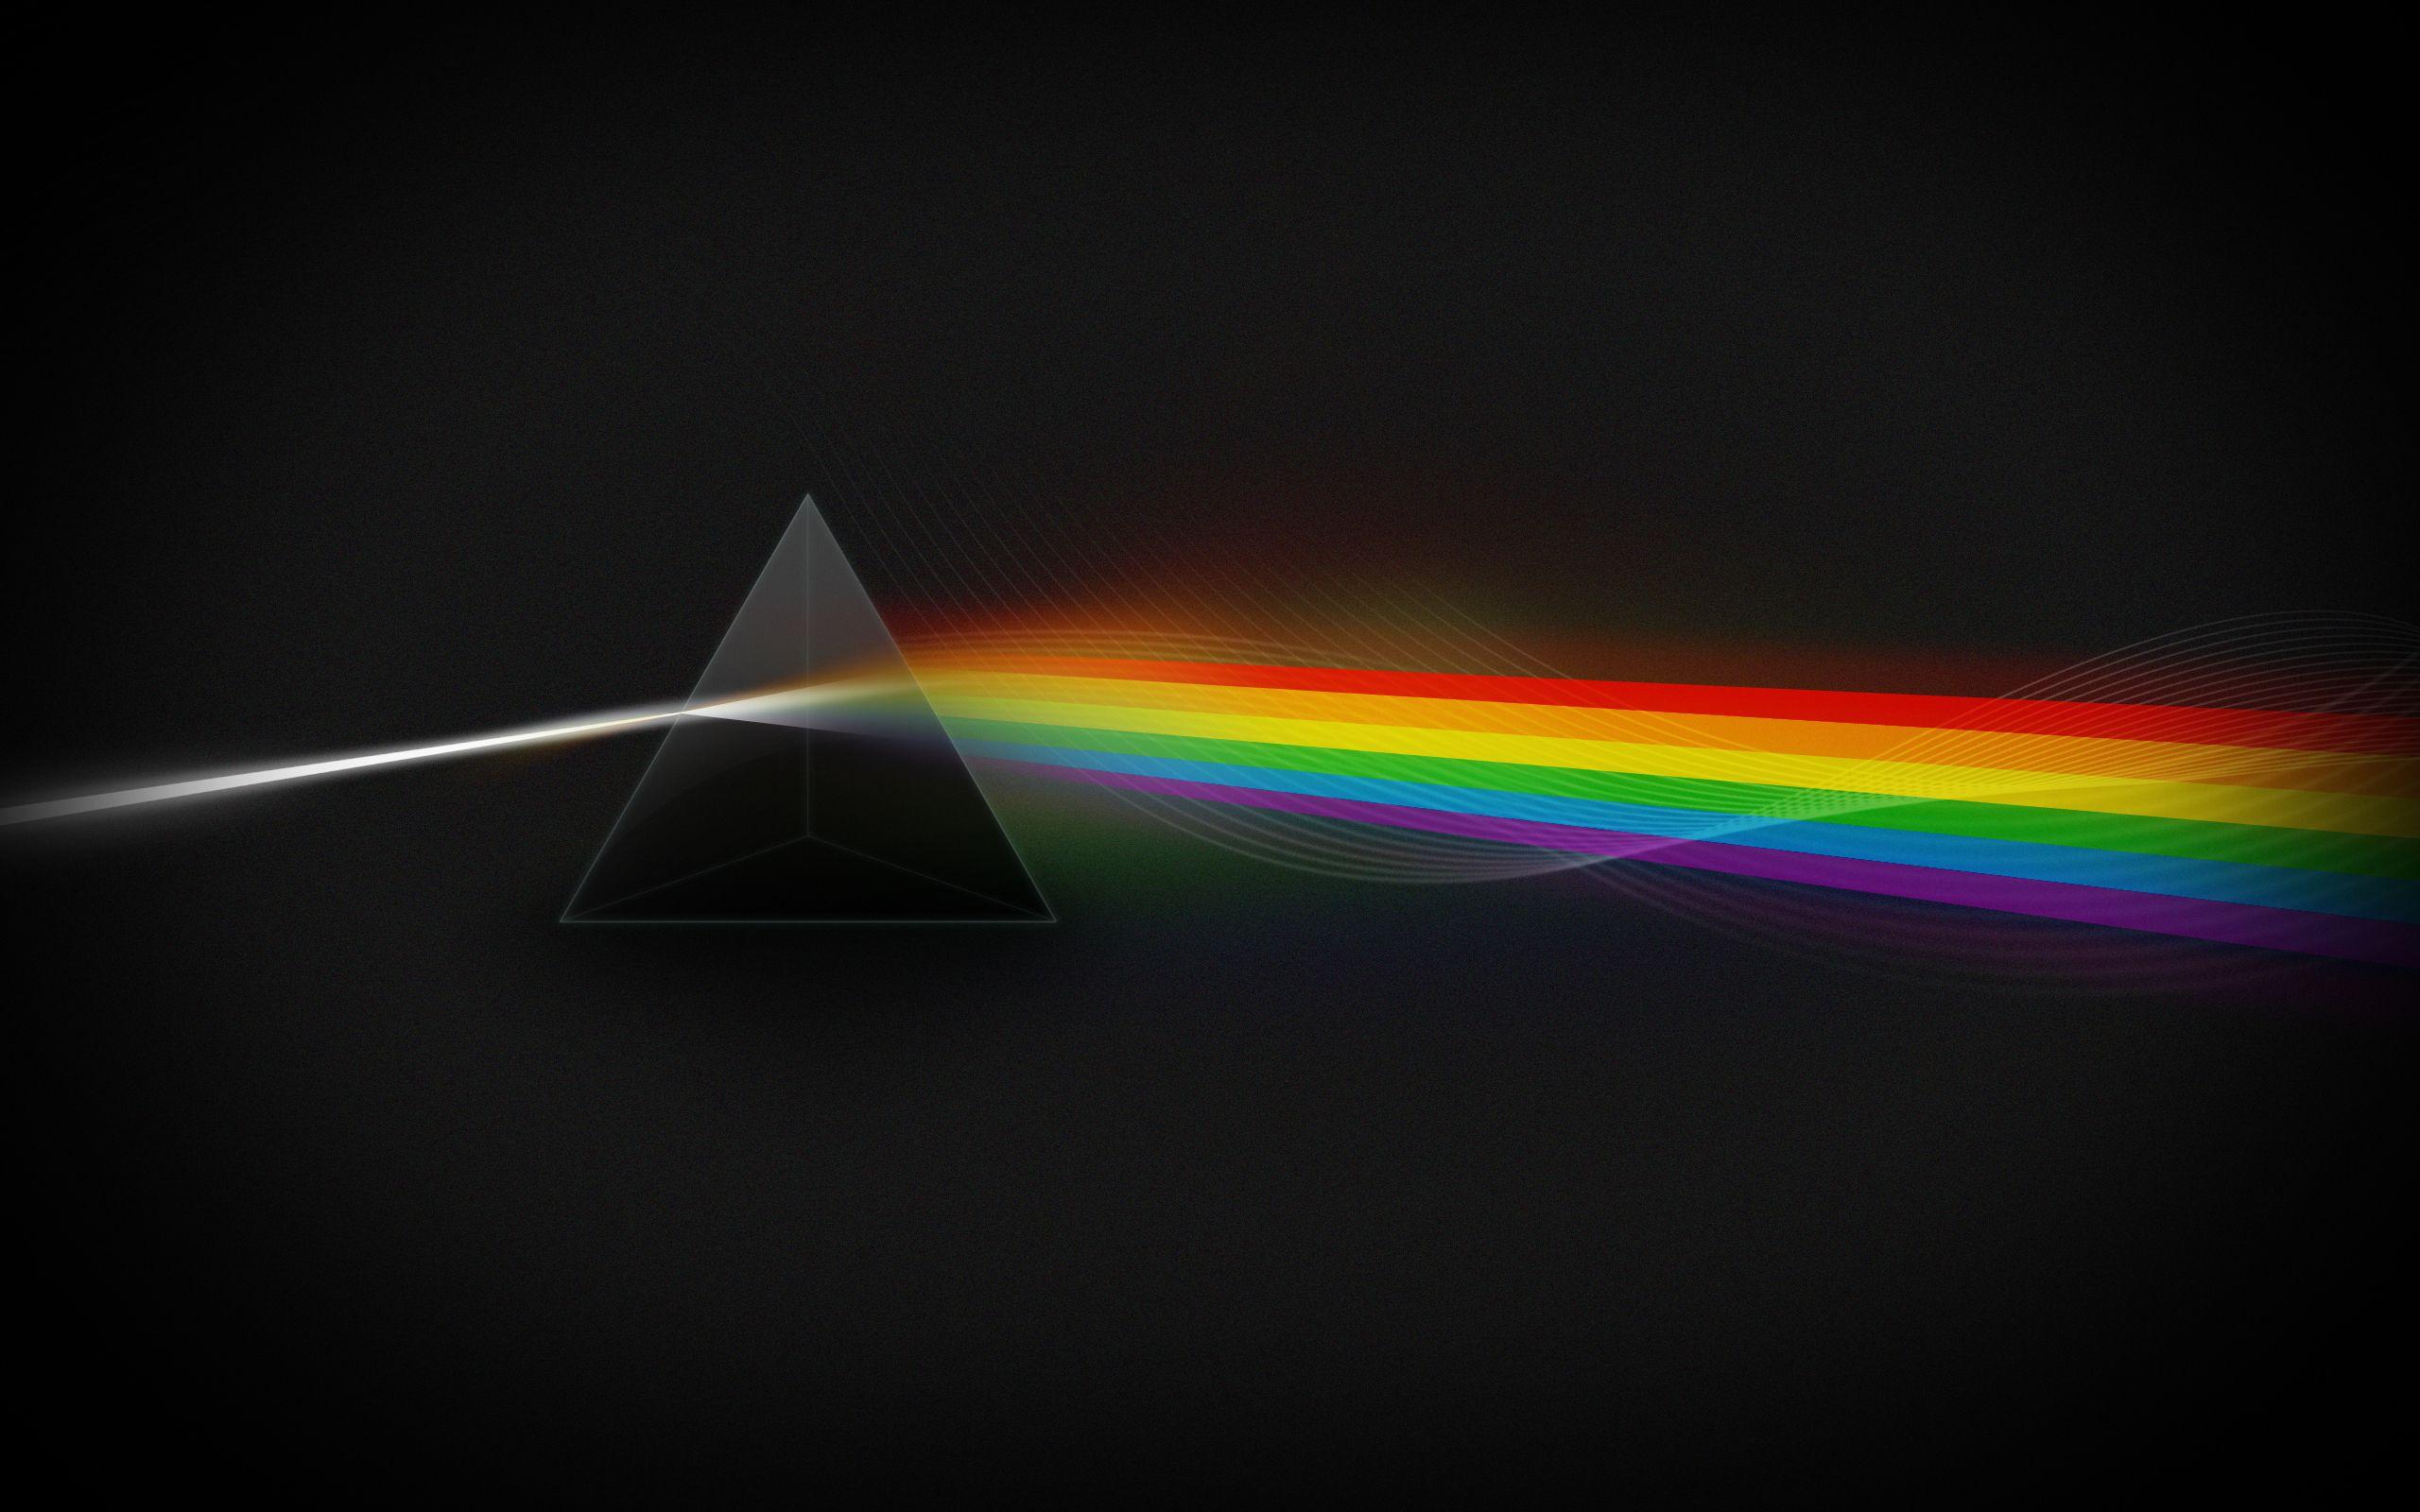 Light spectrum abstract desktop wallpapers